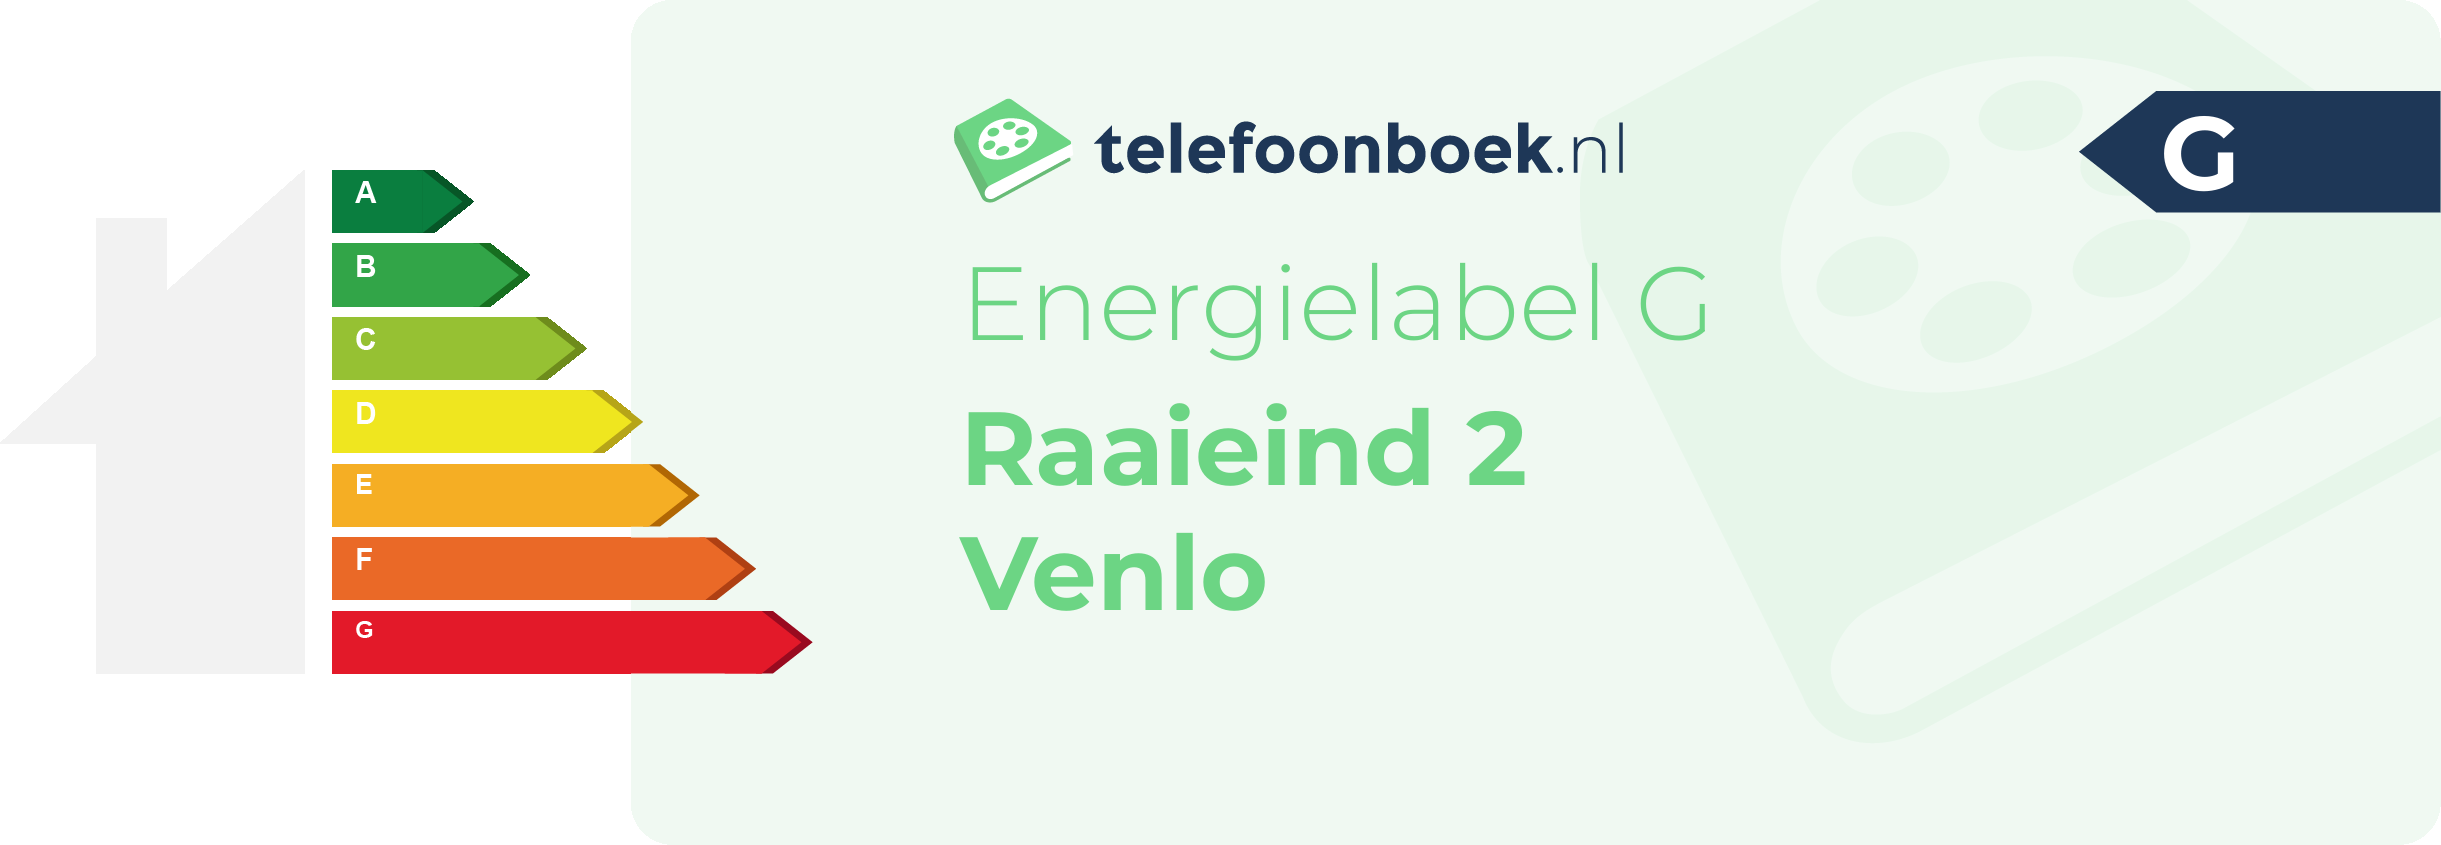 Energielabel Raaieind 2 Venlo